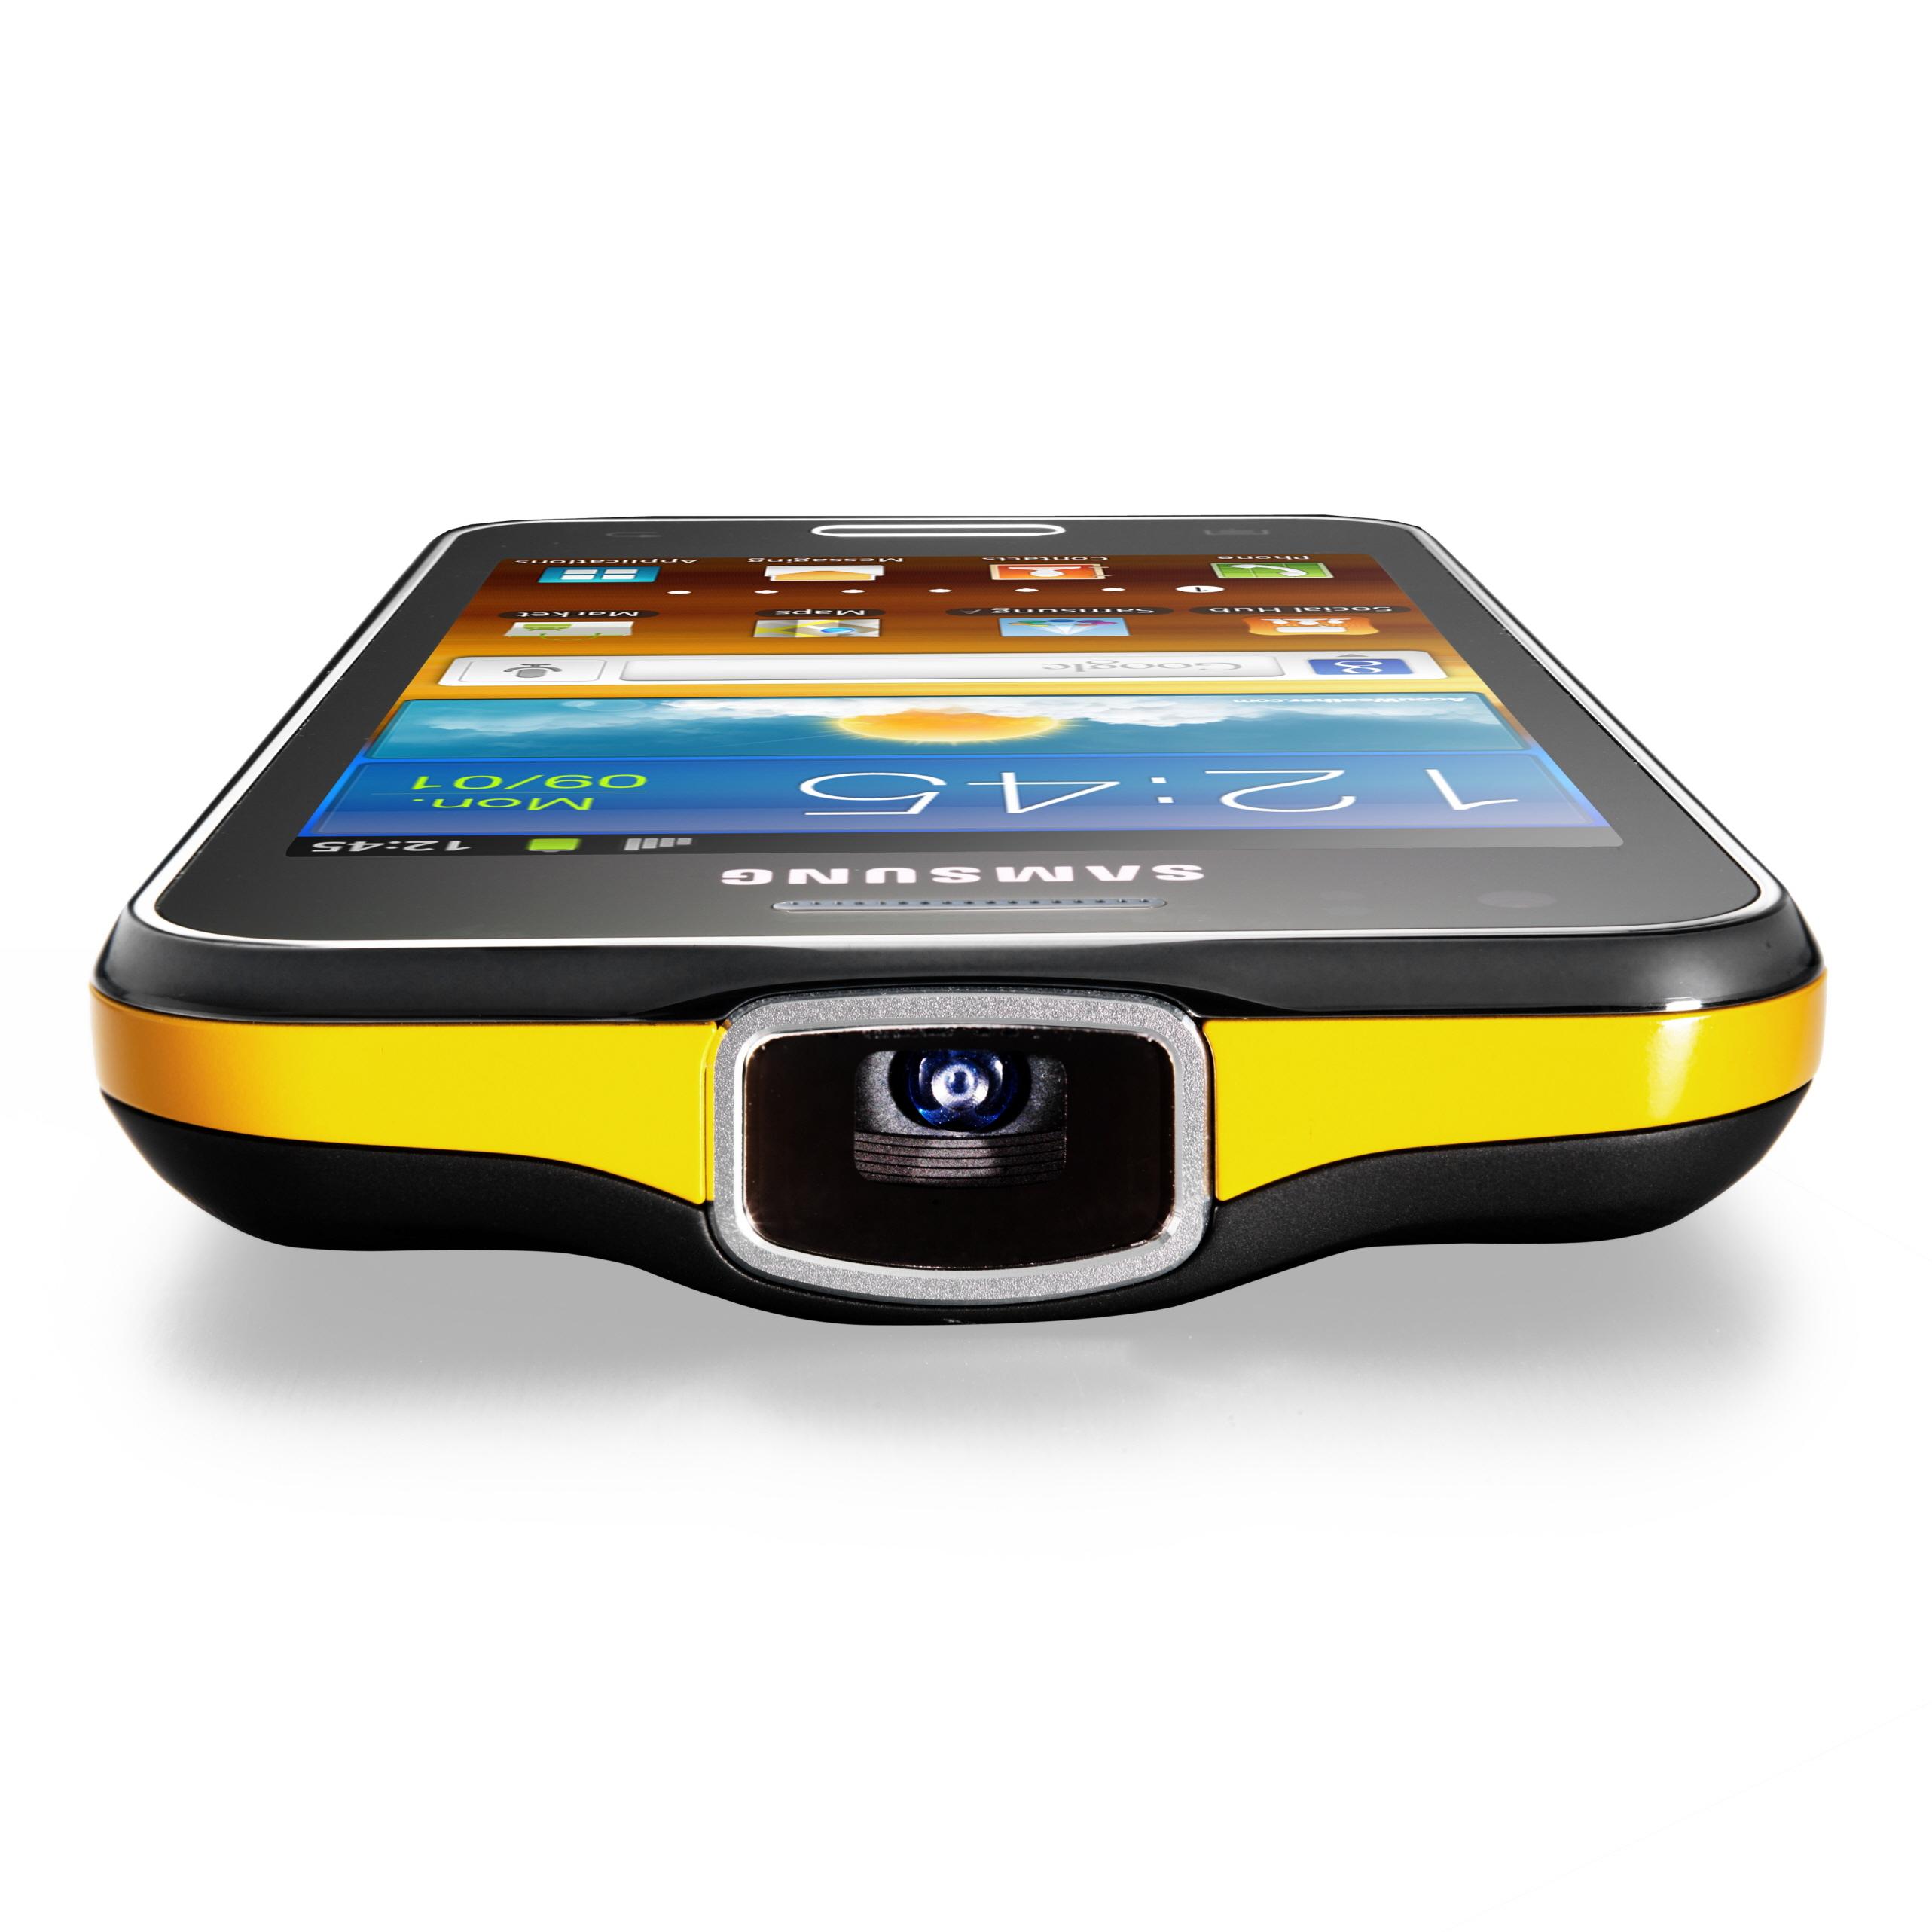 Samsung Galaxy Beam-serien er nå i sin tredje generasjon.. Kun denne, den midterste av modellene, kom i vanlig salg i Norge.Foto: Samsung